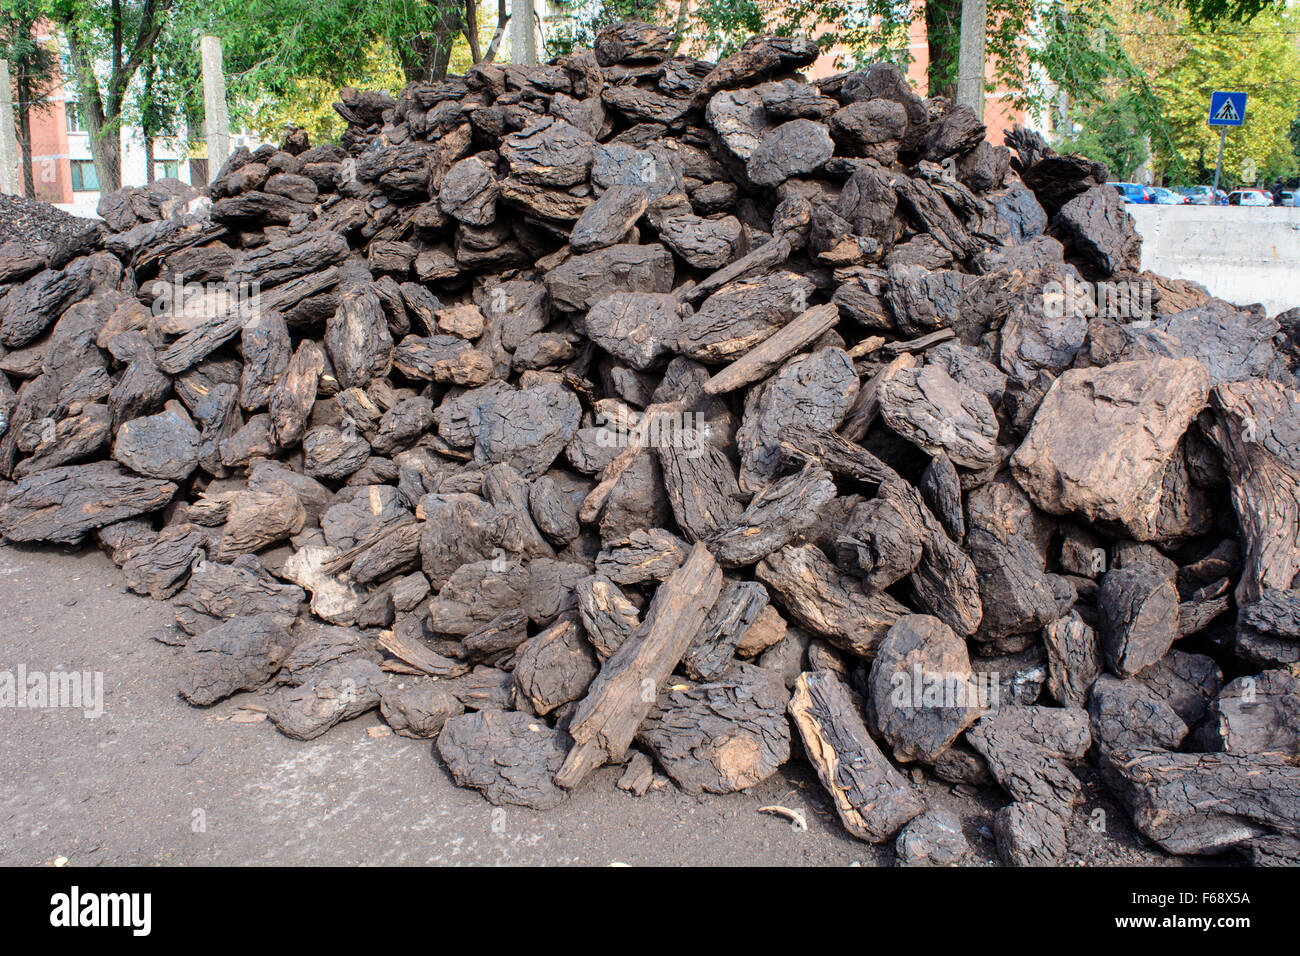 Gutes Preis-Leistungsverhältnis und gute Qualität der Kohle auf Lager warten auf die ersten Kunden. Stockfoto